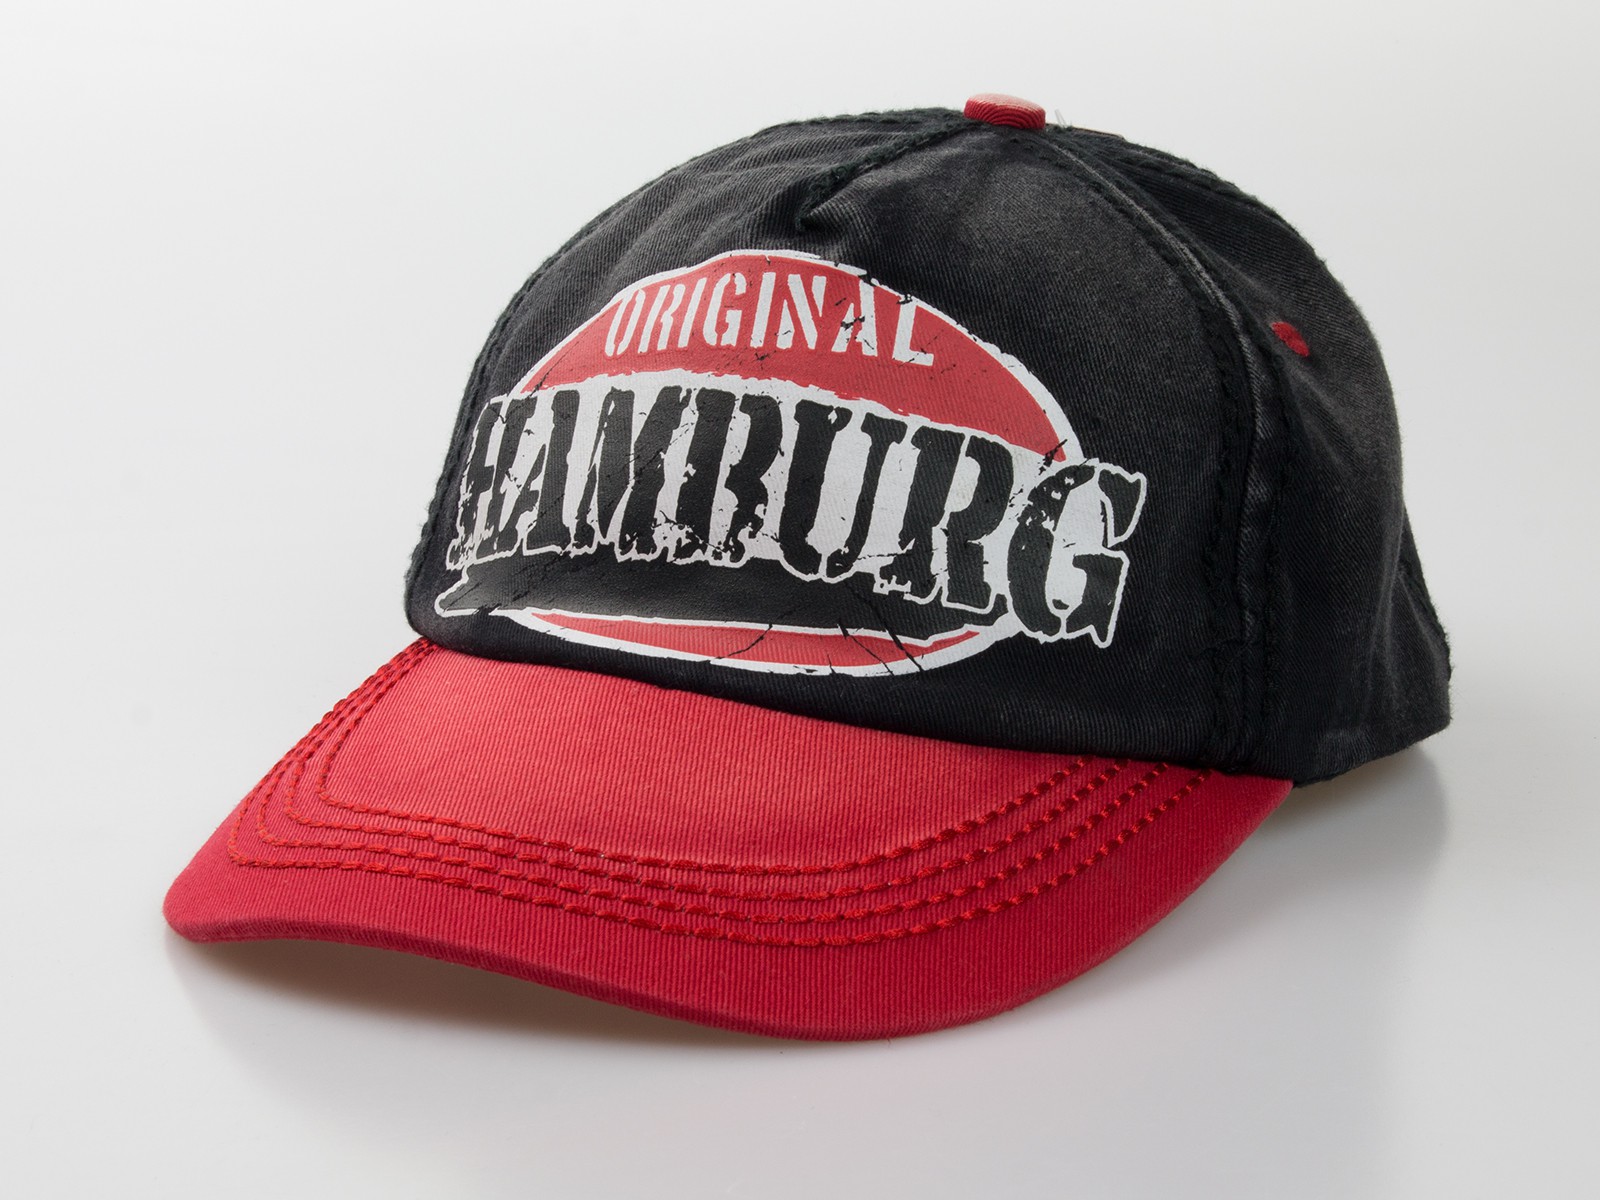 Baseball-Cap "Original Hamburg"